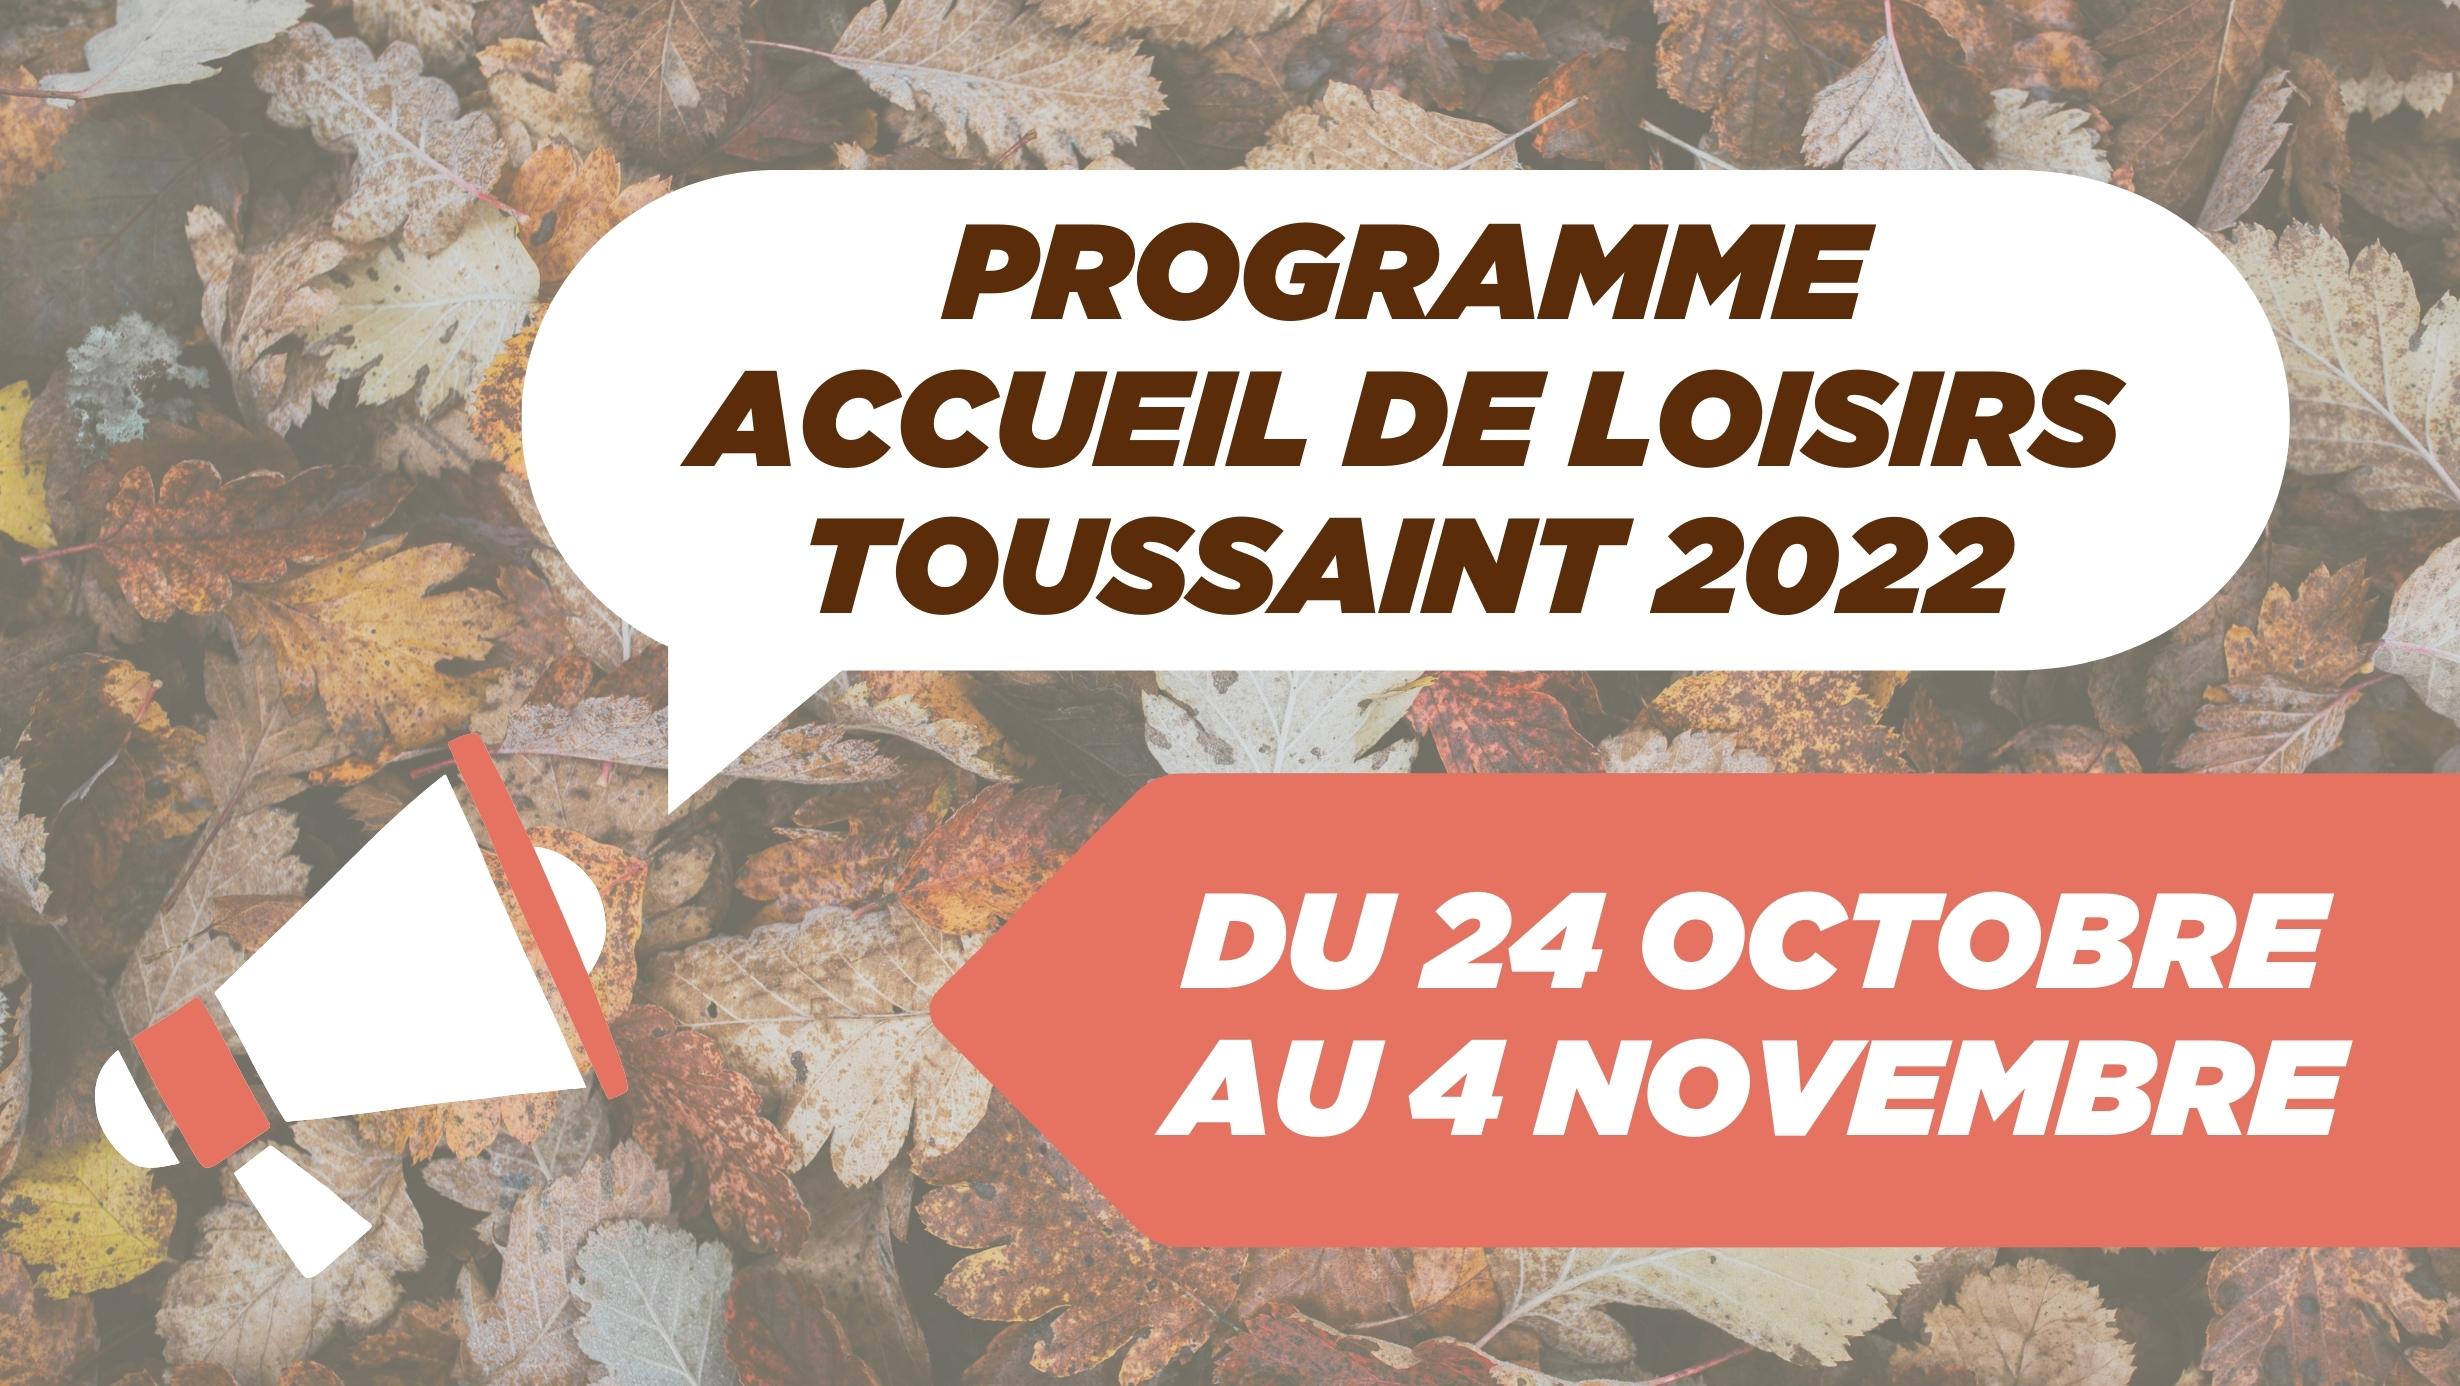 ACCUEIL DE LOISIRS : Toussaint 2022